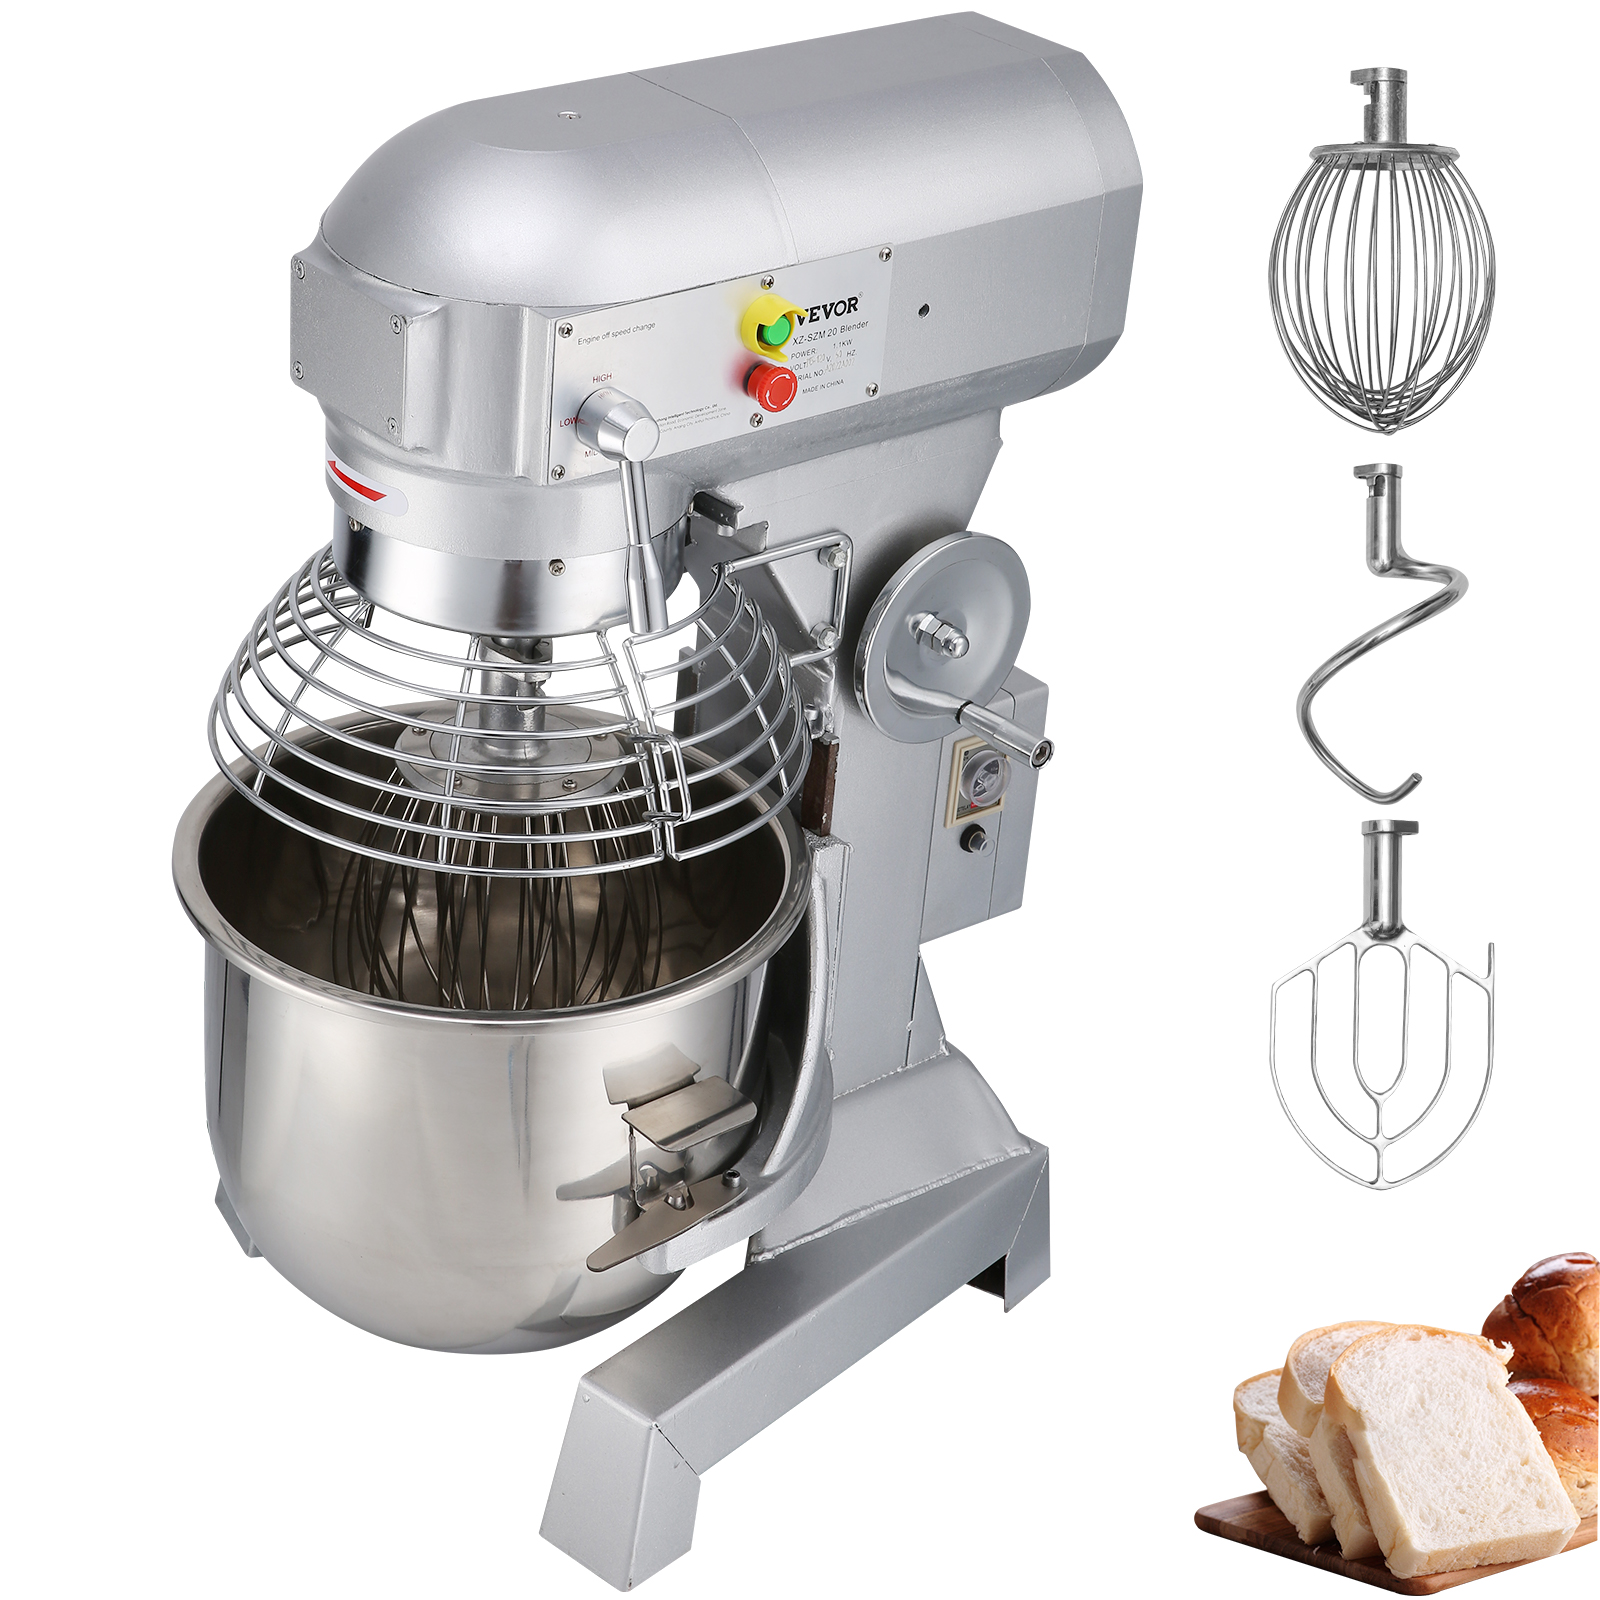 VEVOR Commercial Mixer 10Qt Mixer 3 Speed Dough Food mixer Pizza Bakery 450W от Vevor Many GEOs